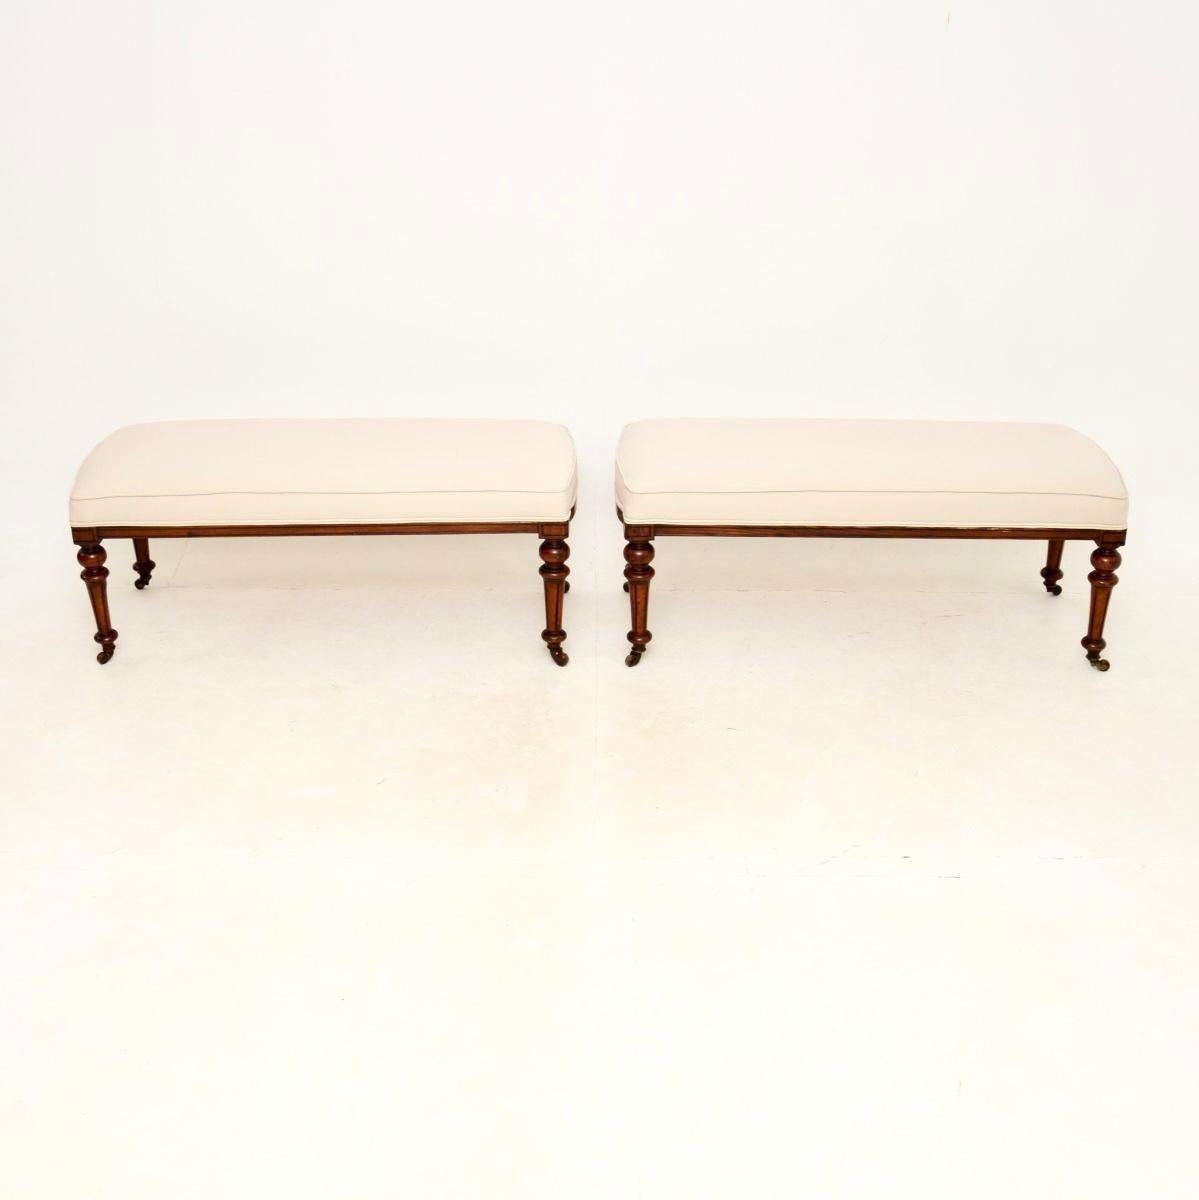 Ein schönes Paar antiker viktorianischer Hocker / Bänke aus Walnussholz. Sie wurden aus antiken viktorianischen Esszimmerstühlen aus Nussbaumholz adaptiert und fachmännisch zu einem praktischen Hockerpaar verarbeitet.

Sie sind von hervorragender